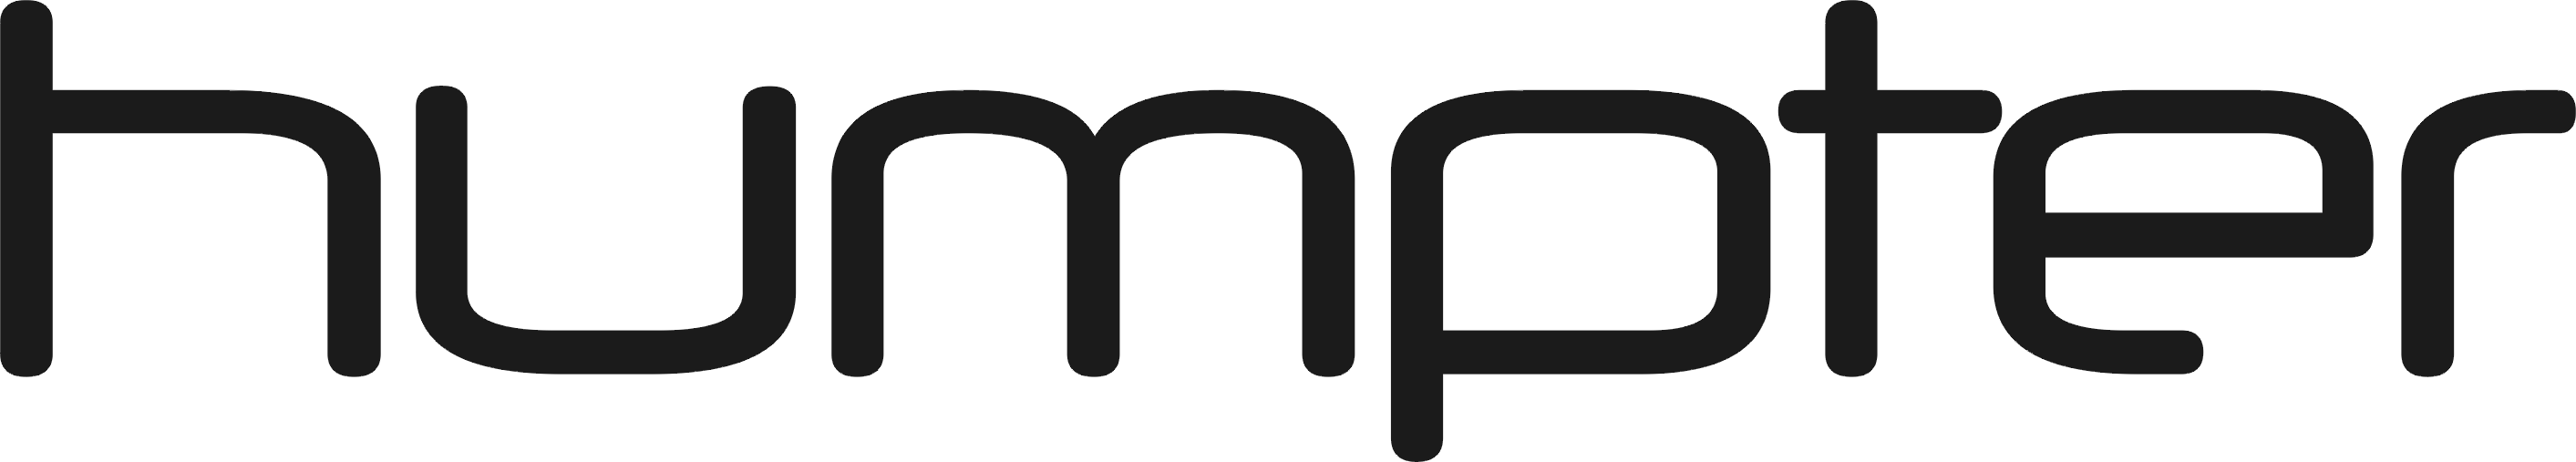 Humpter logo